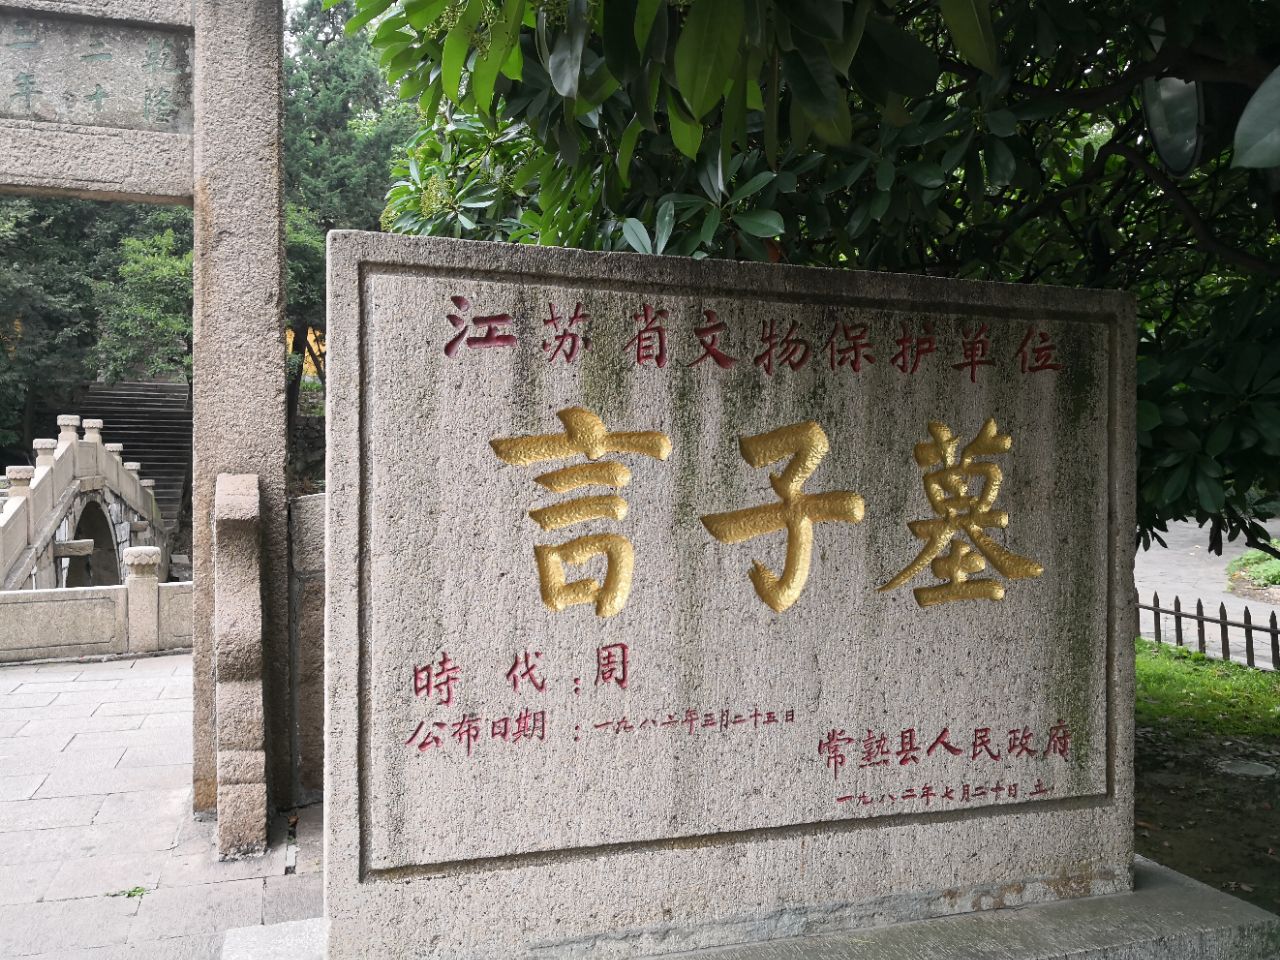 言子墓位于虞山脚下,比邻常熟博物馆